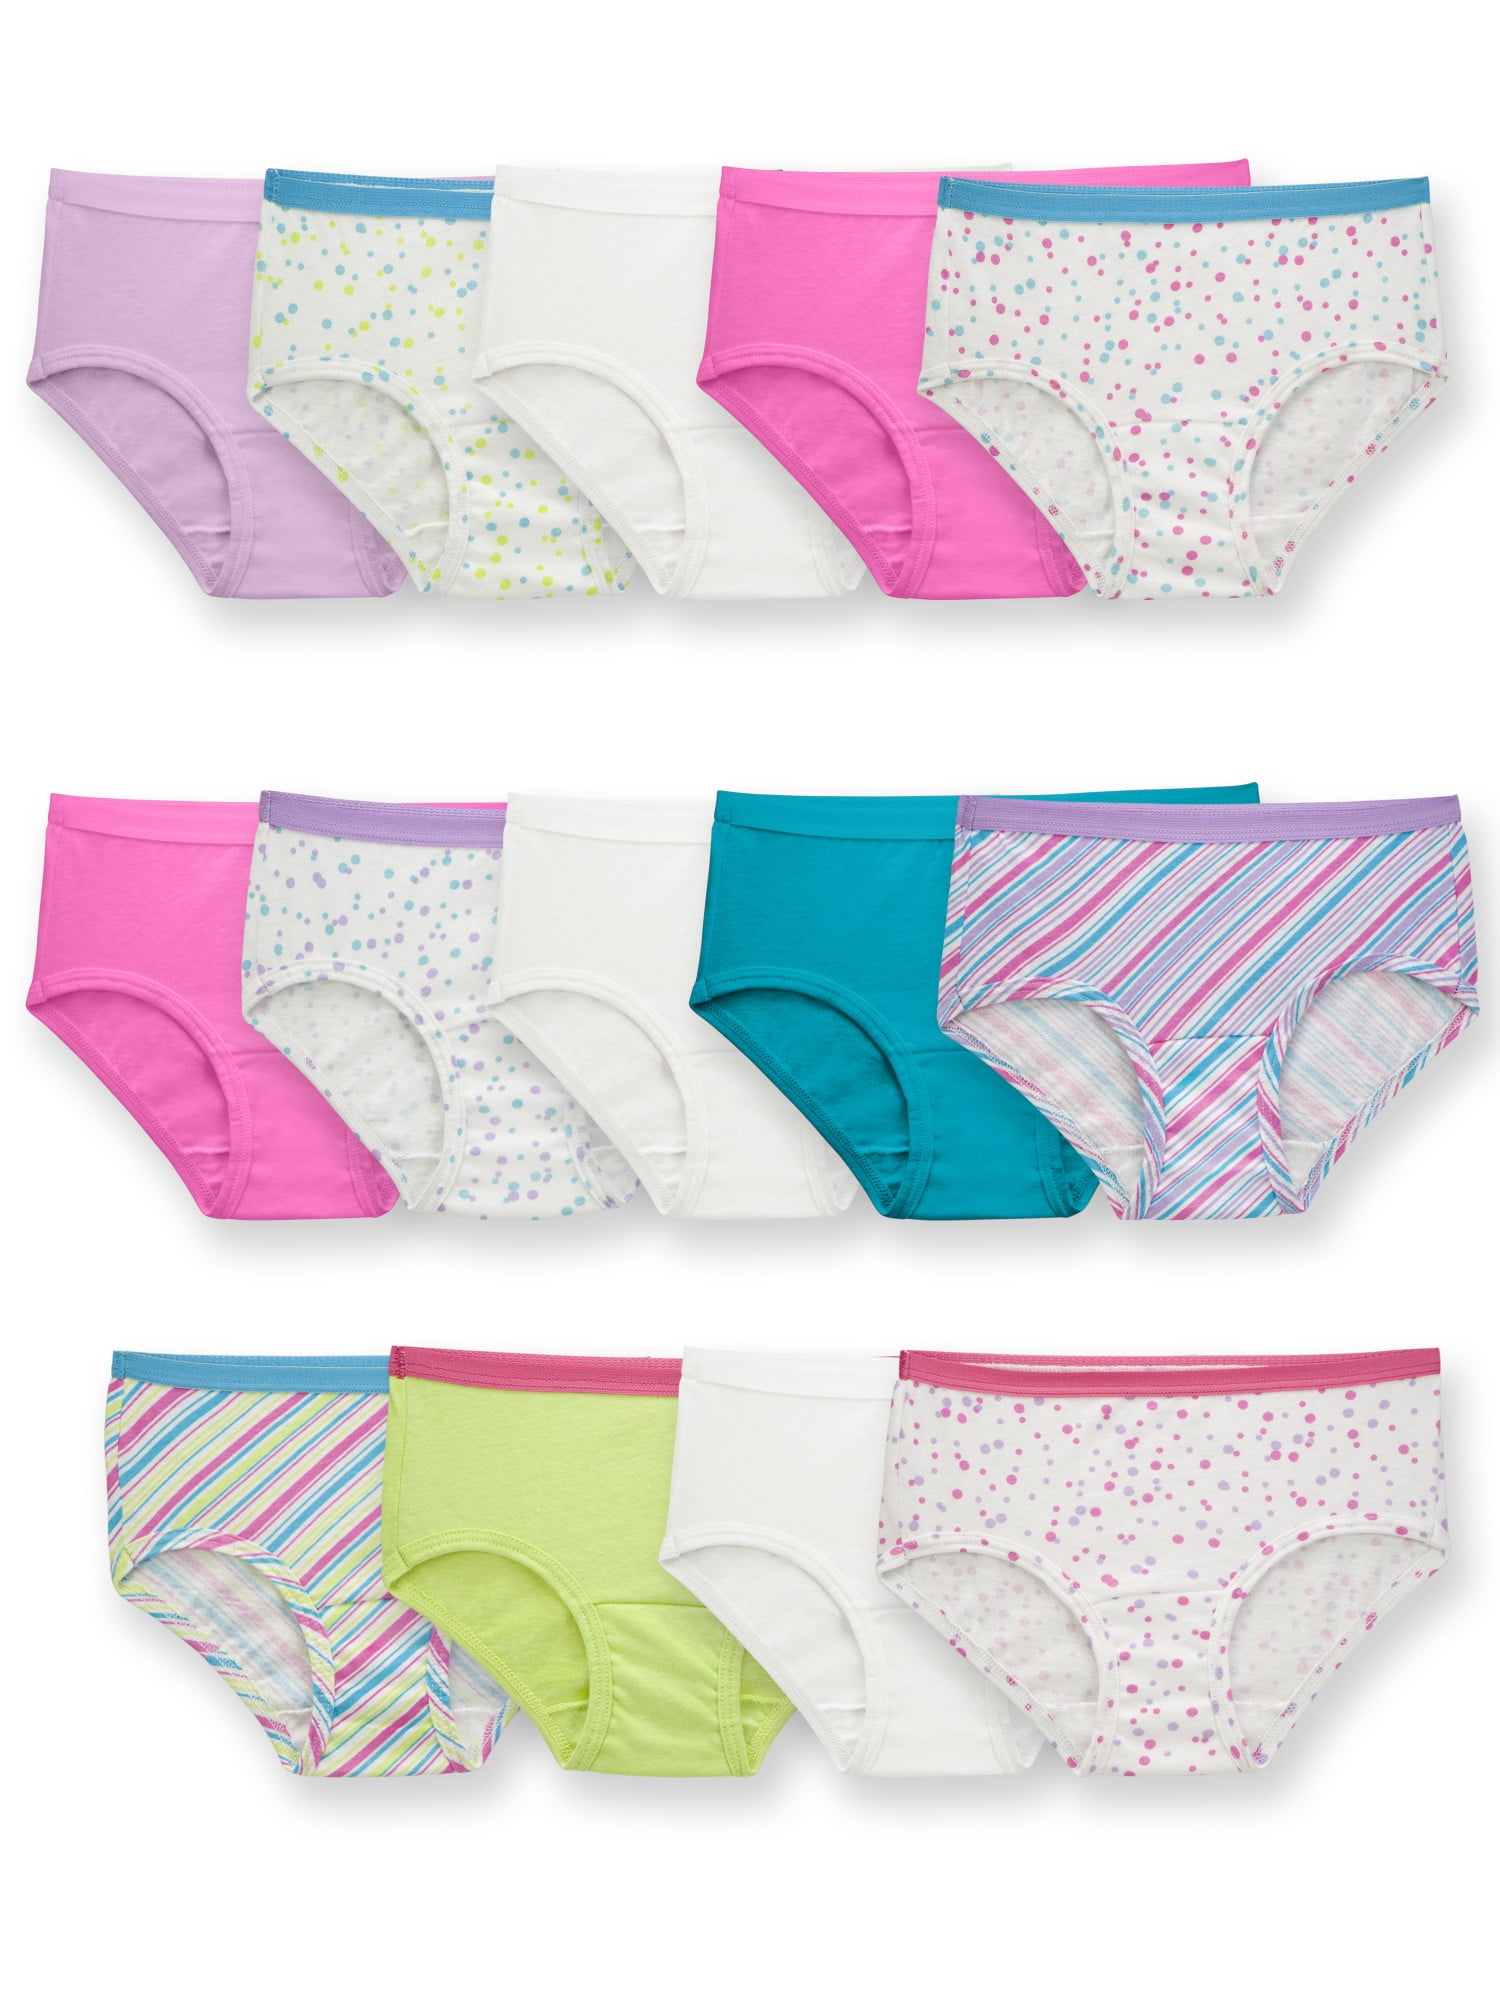 Fruit of the Loom Girls Brief Underwear, 14 Pack Panties, Sizes 4 - 16